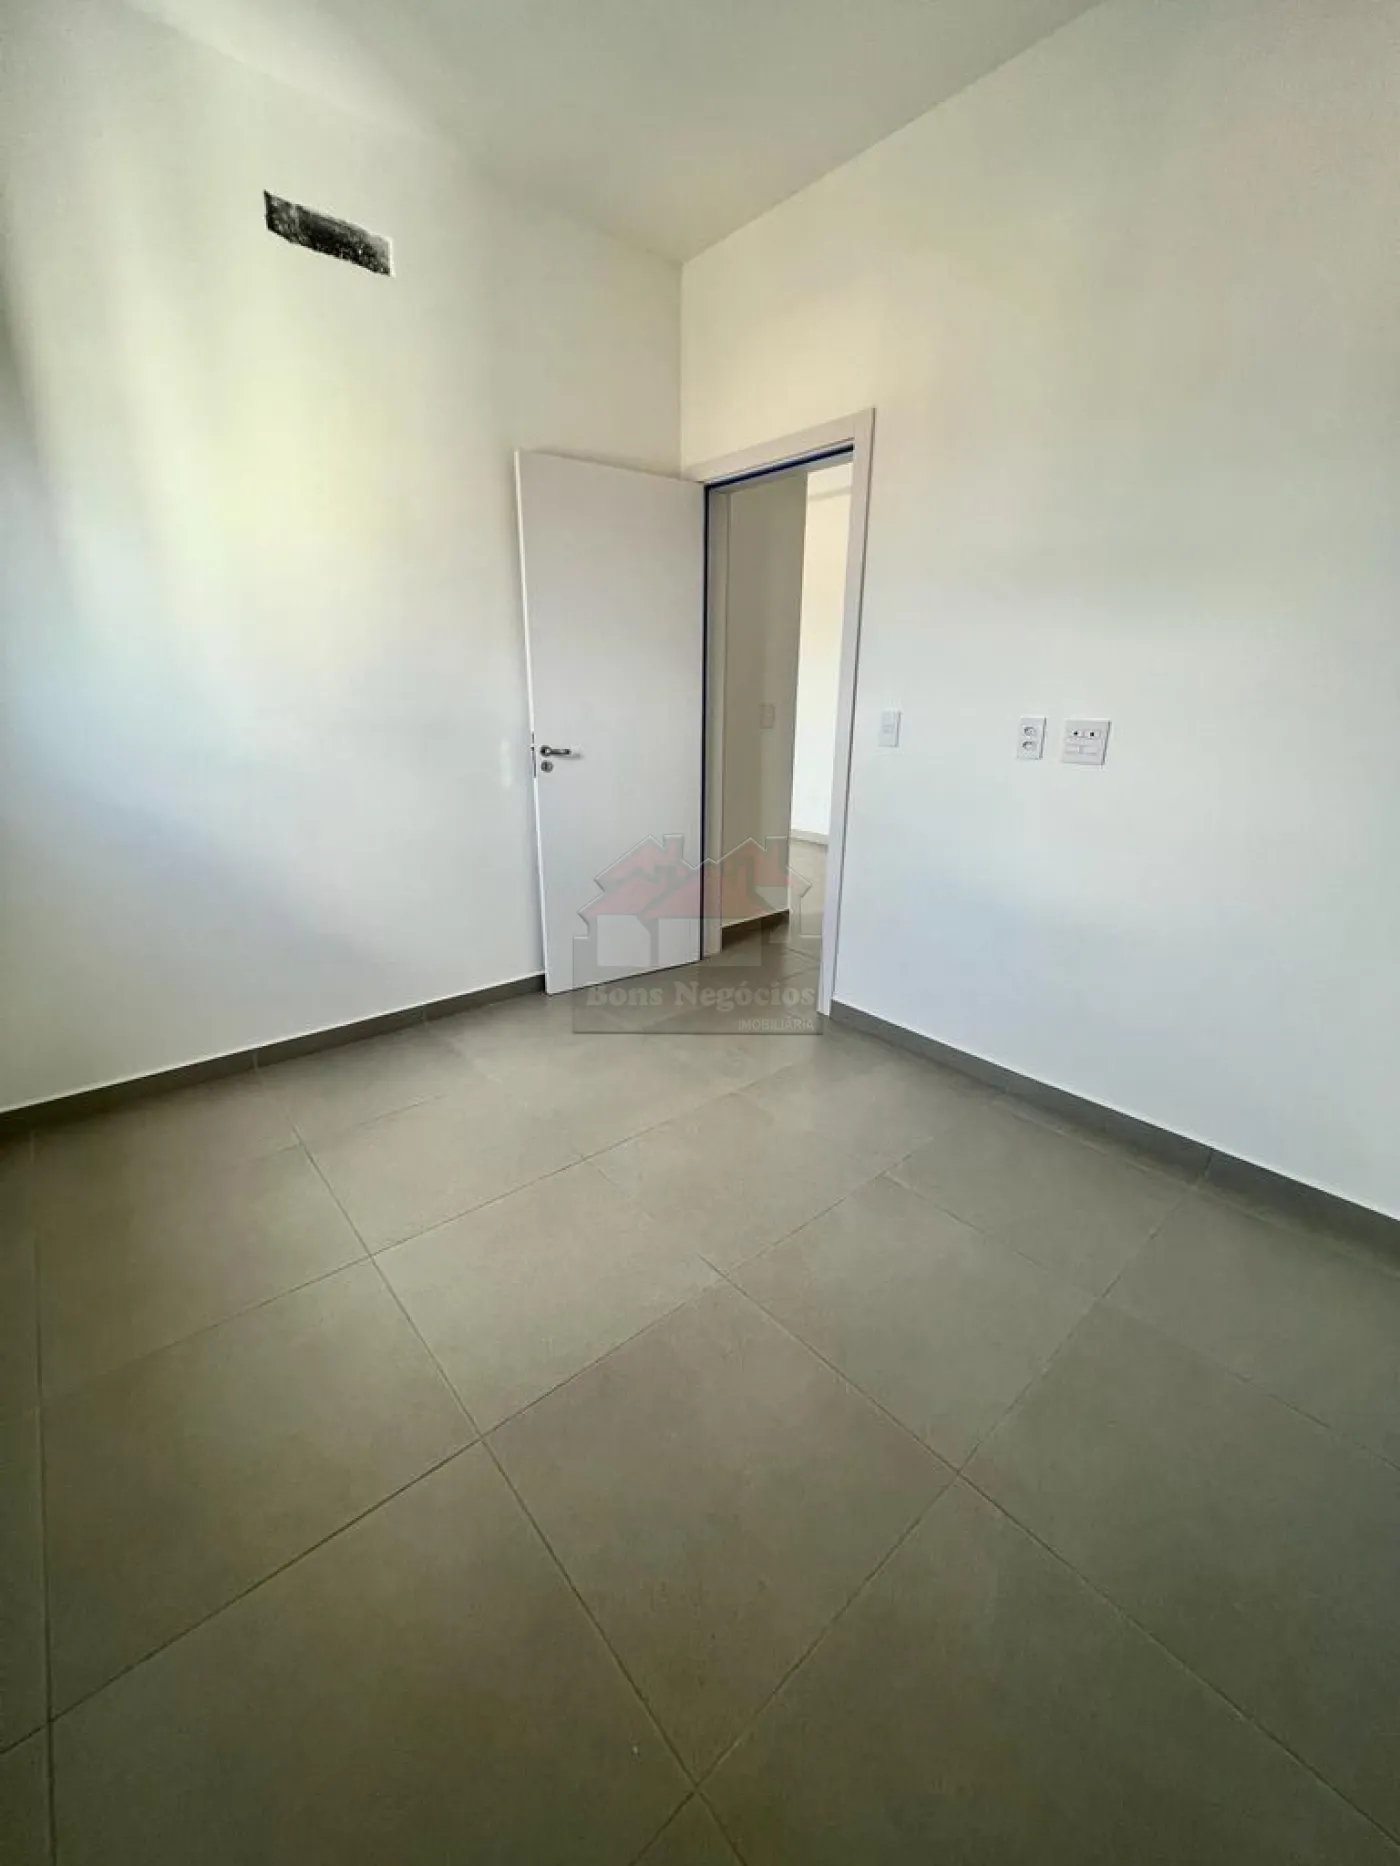 Comprar Apartamento / Padrão sem Condomínio em Ribeirão Preto R$ 216.000,00 - Foto 6